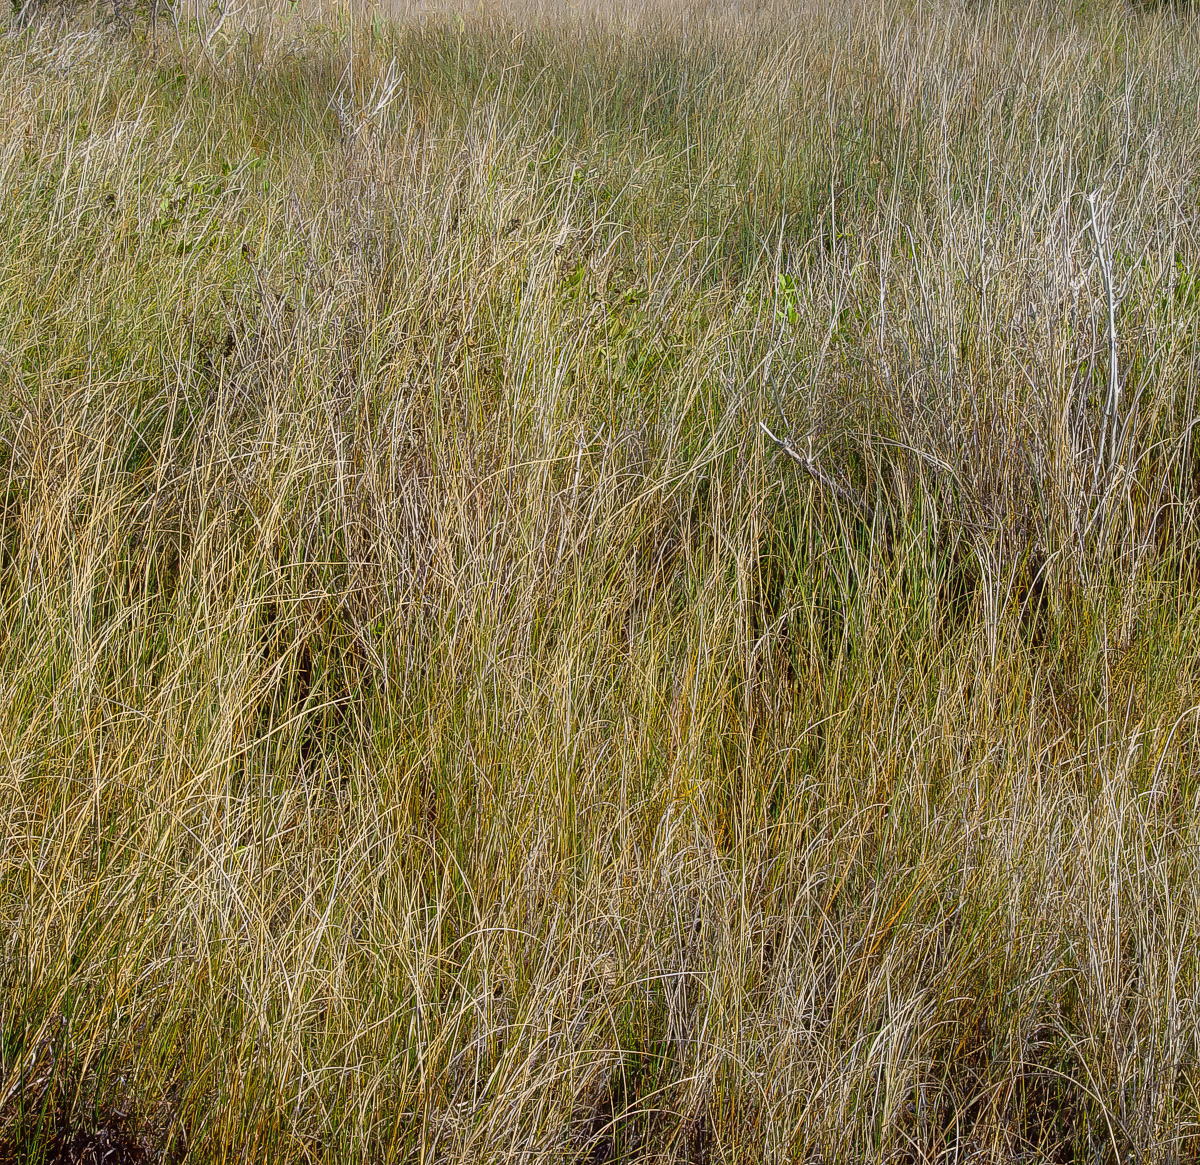 Grasses, Outer Banks, North Carolina